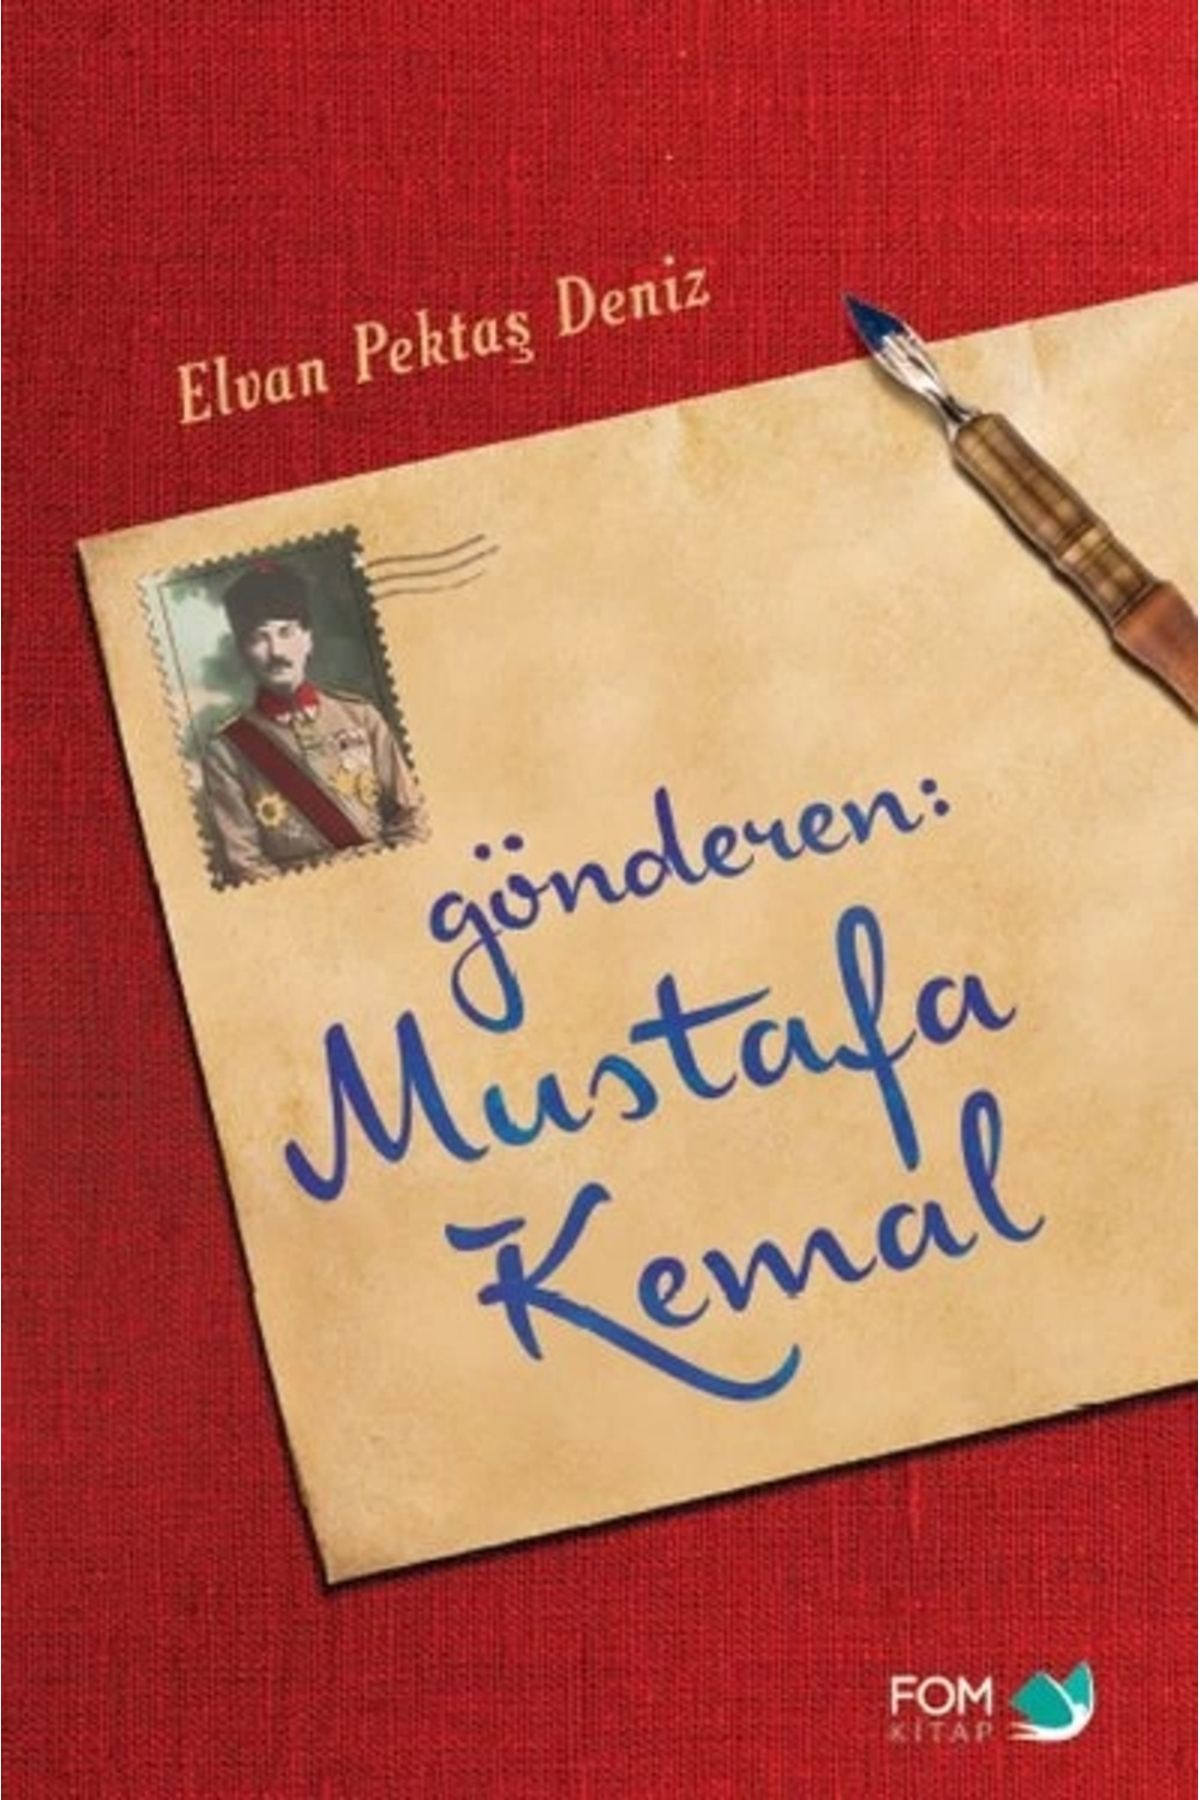 Fom Kitap Yayınları Gönderen Mustafa Kemal